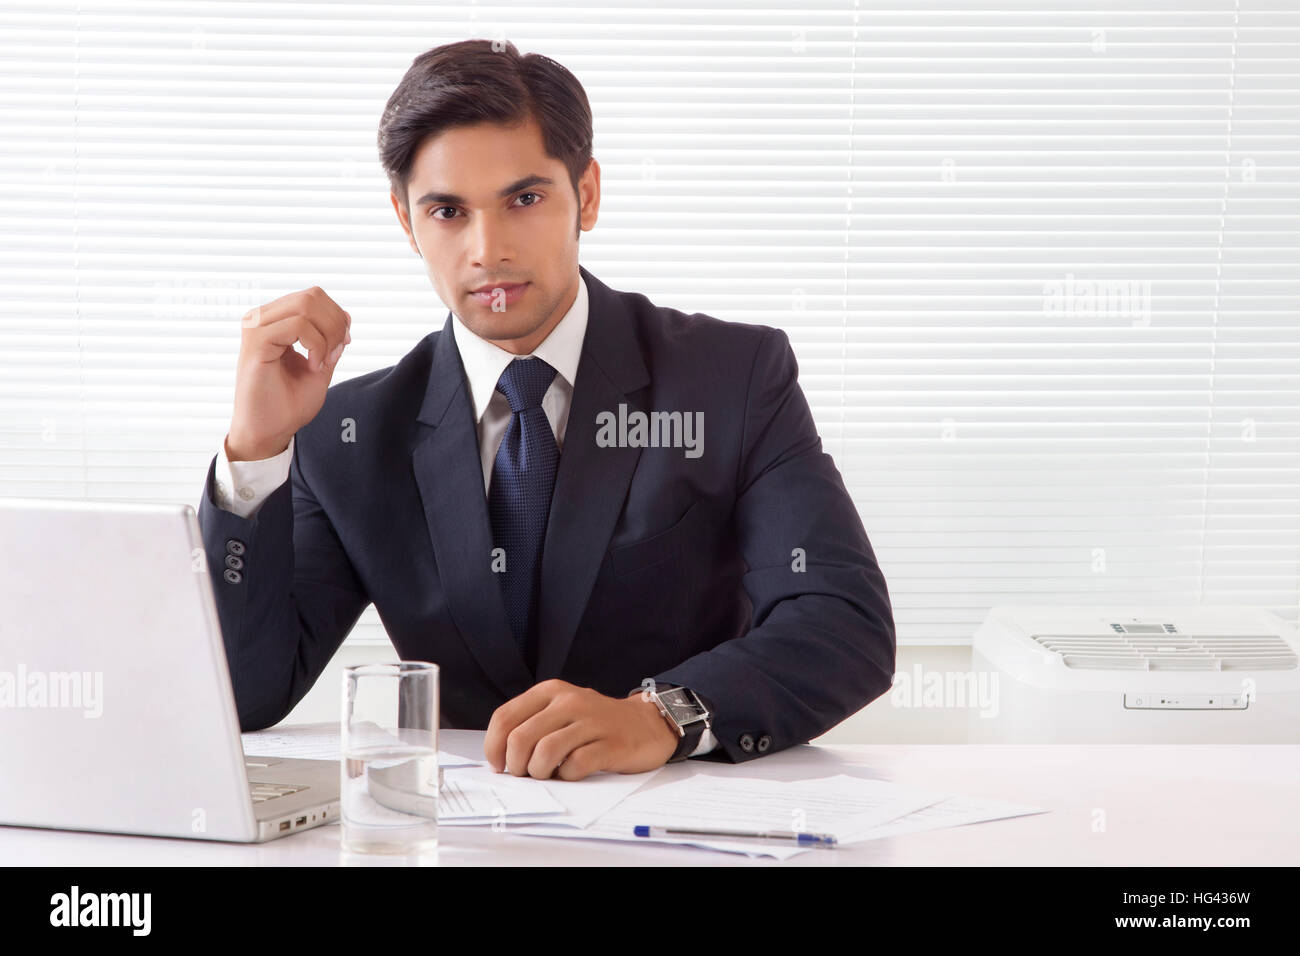 Jeune homme professionnel de bureau avec un ordinateur portable sur la table Banque D'Images